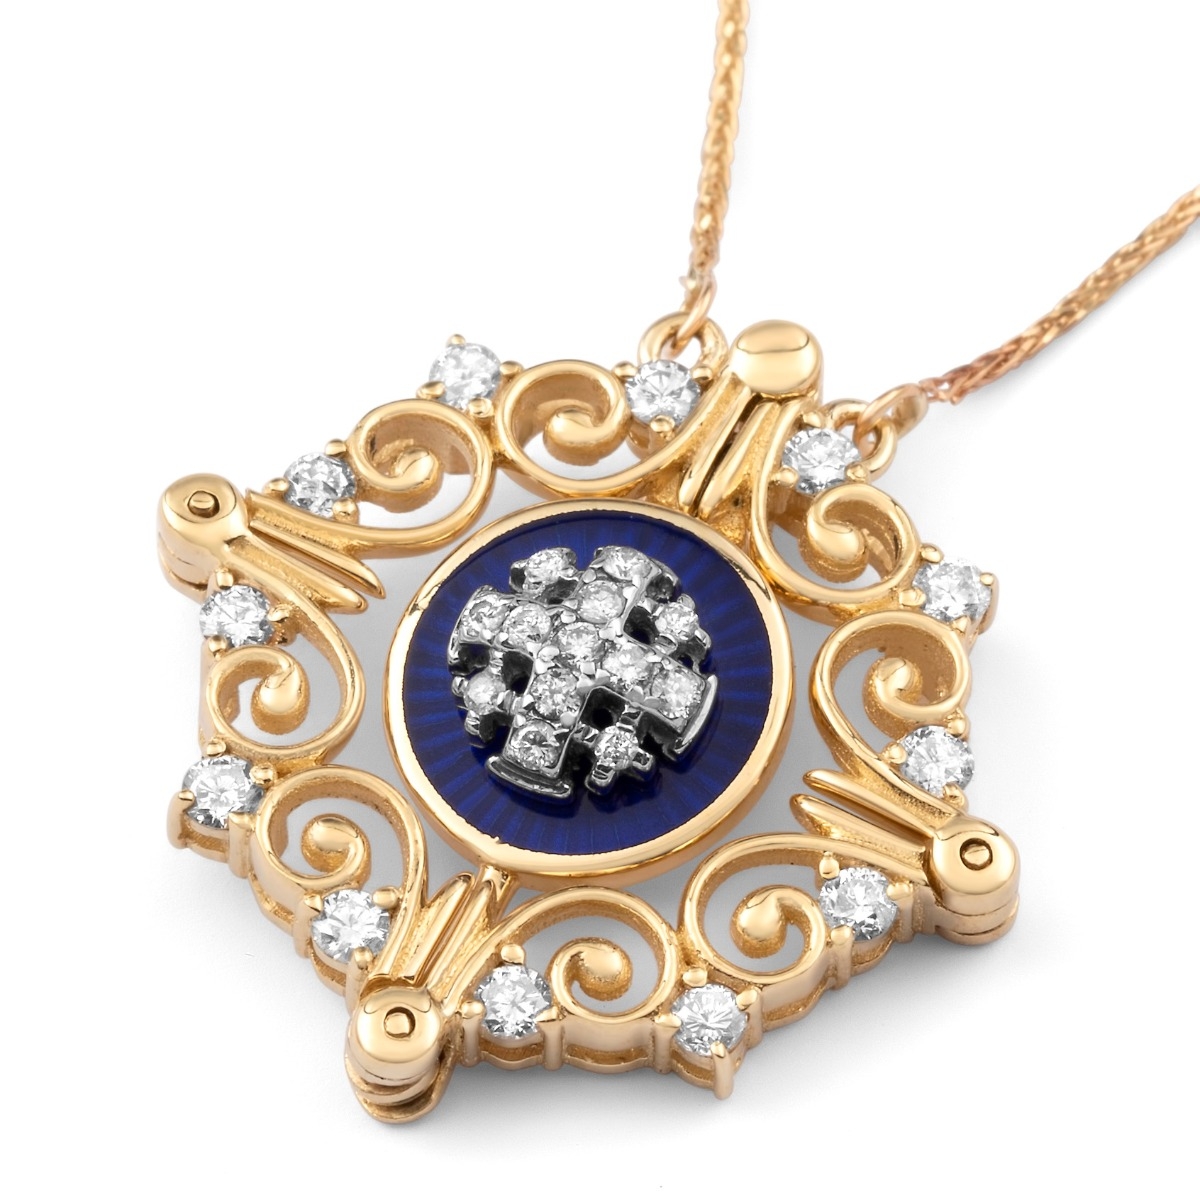 Anbinder Jewelry 14K Gold Vintage Jerusalem Cross Necklace with Blue Enamel & White Diamonds - 1